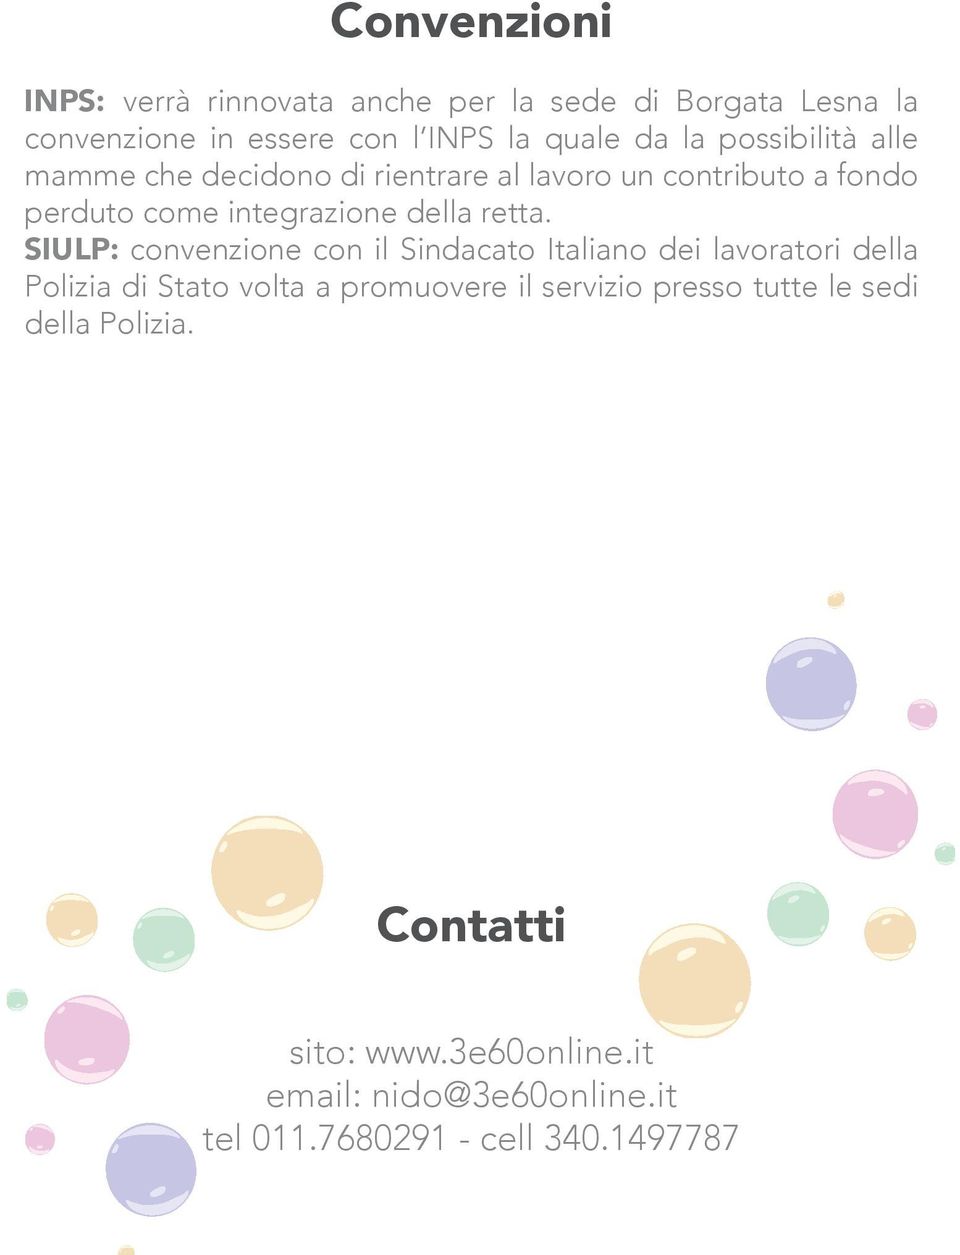 SIULP: convenzione con il Sindacato Italiano dei lavoratori della Polizia di Stato volta a promuovere il servizio presso